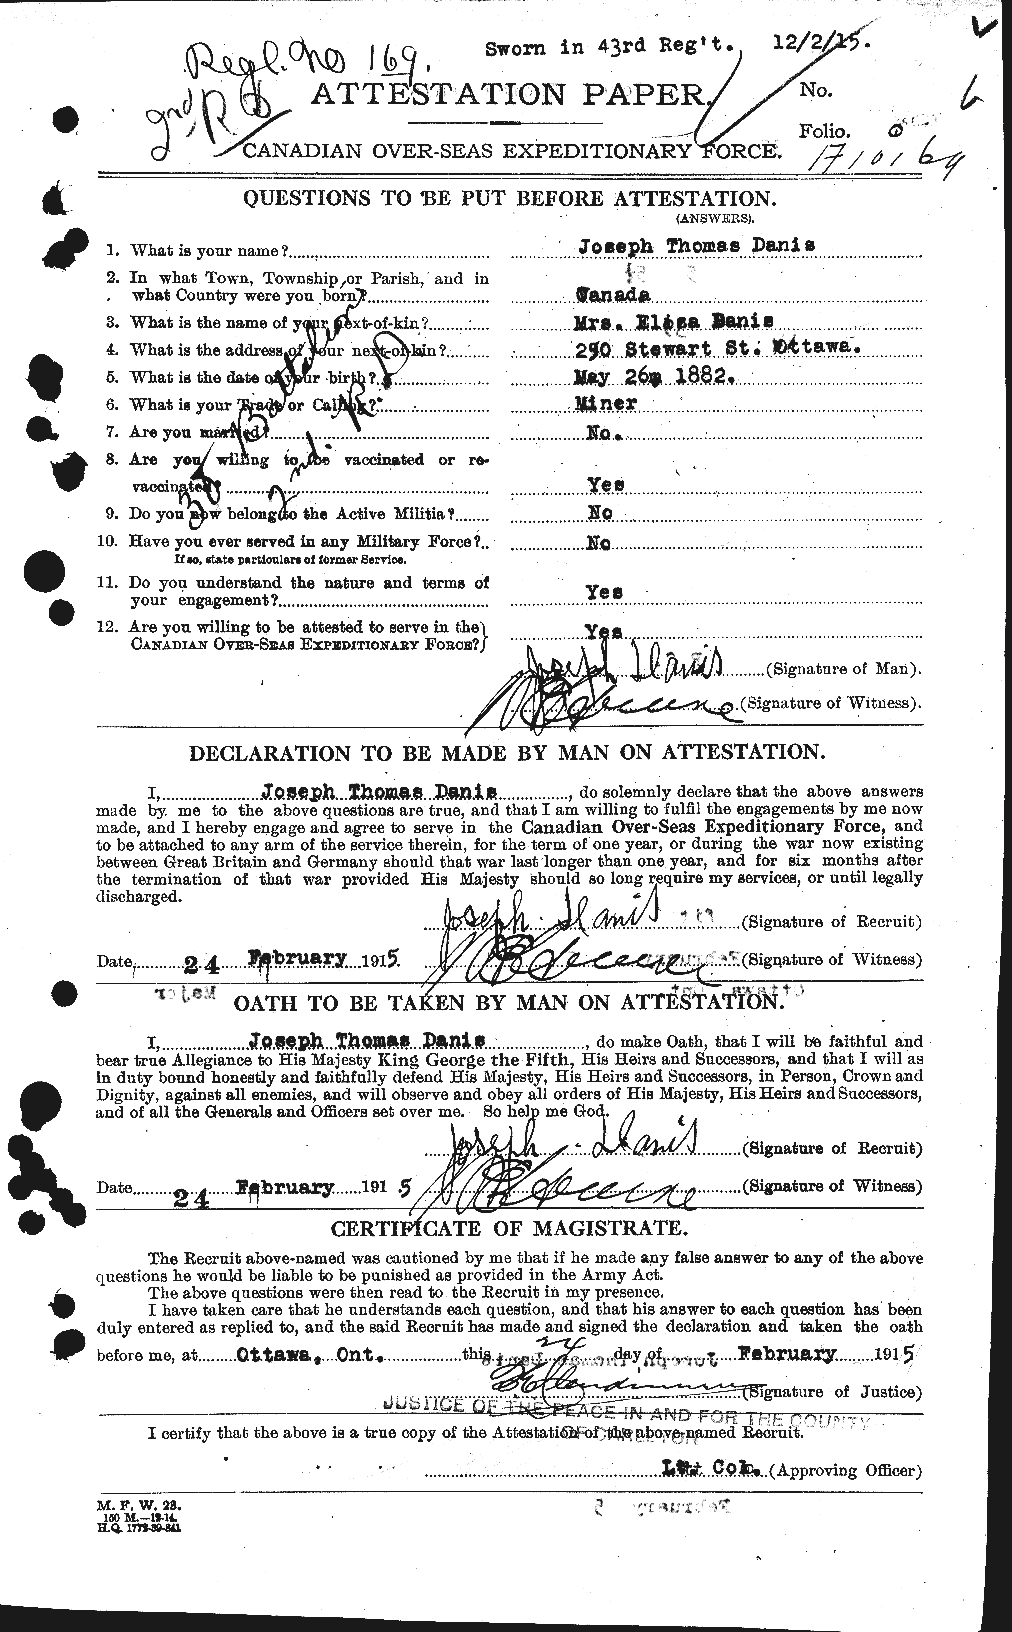 Dossiers du Personnel de la Première Guerre mondiale - CEC 279755a